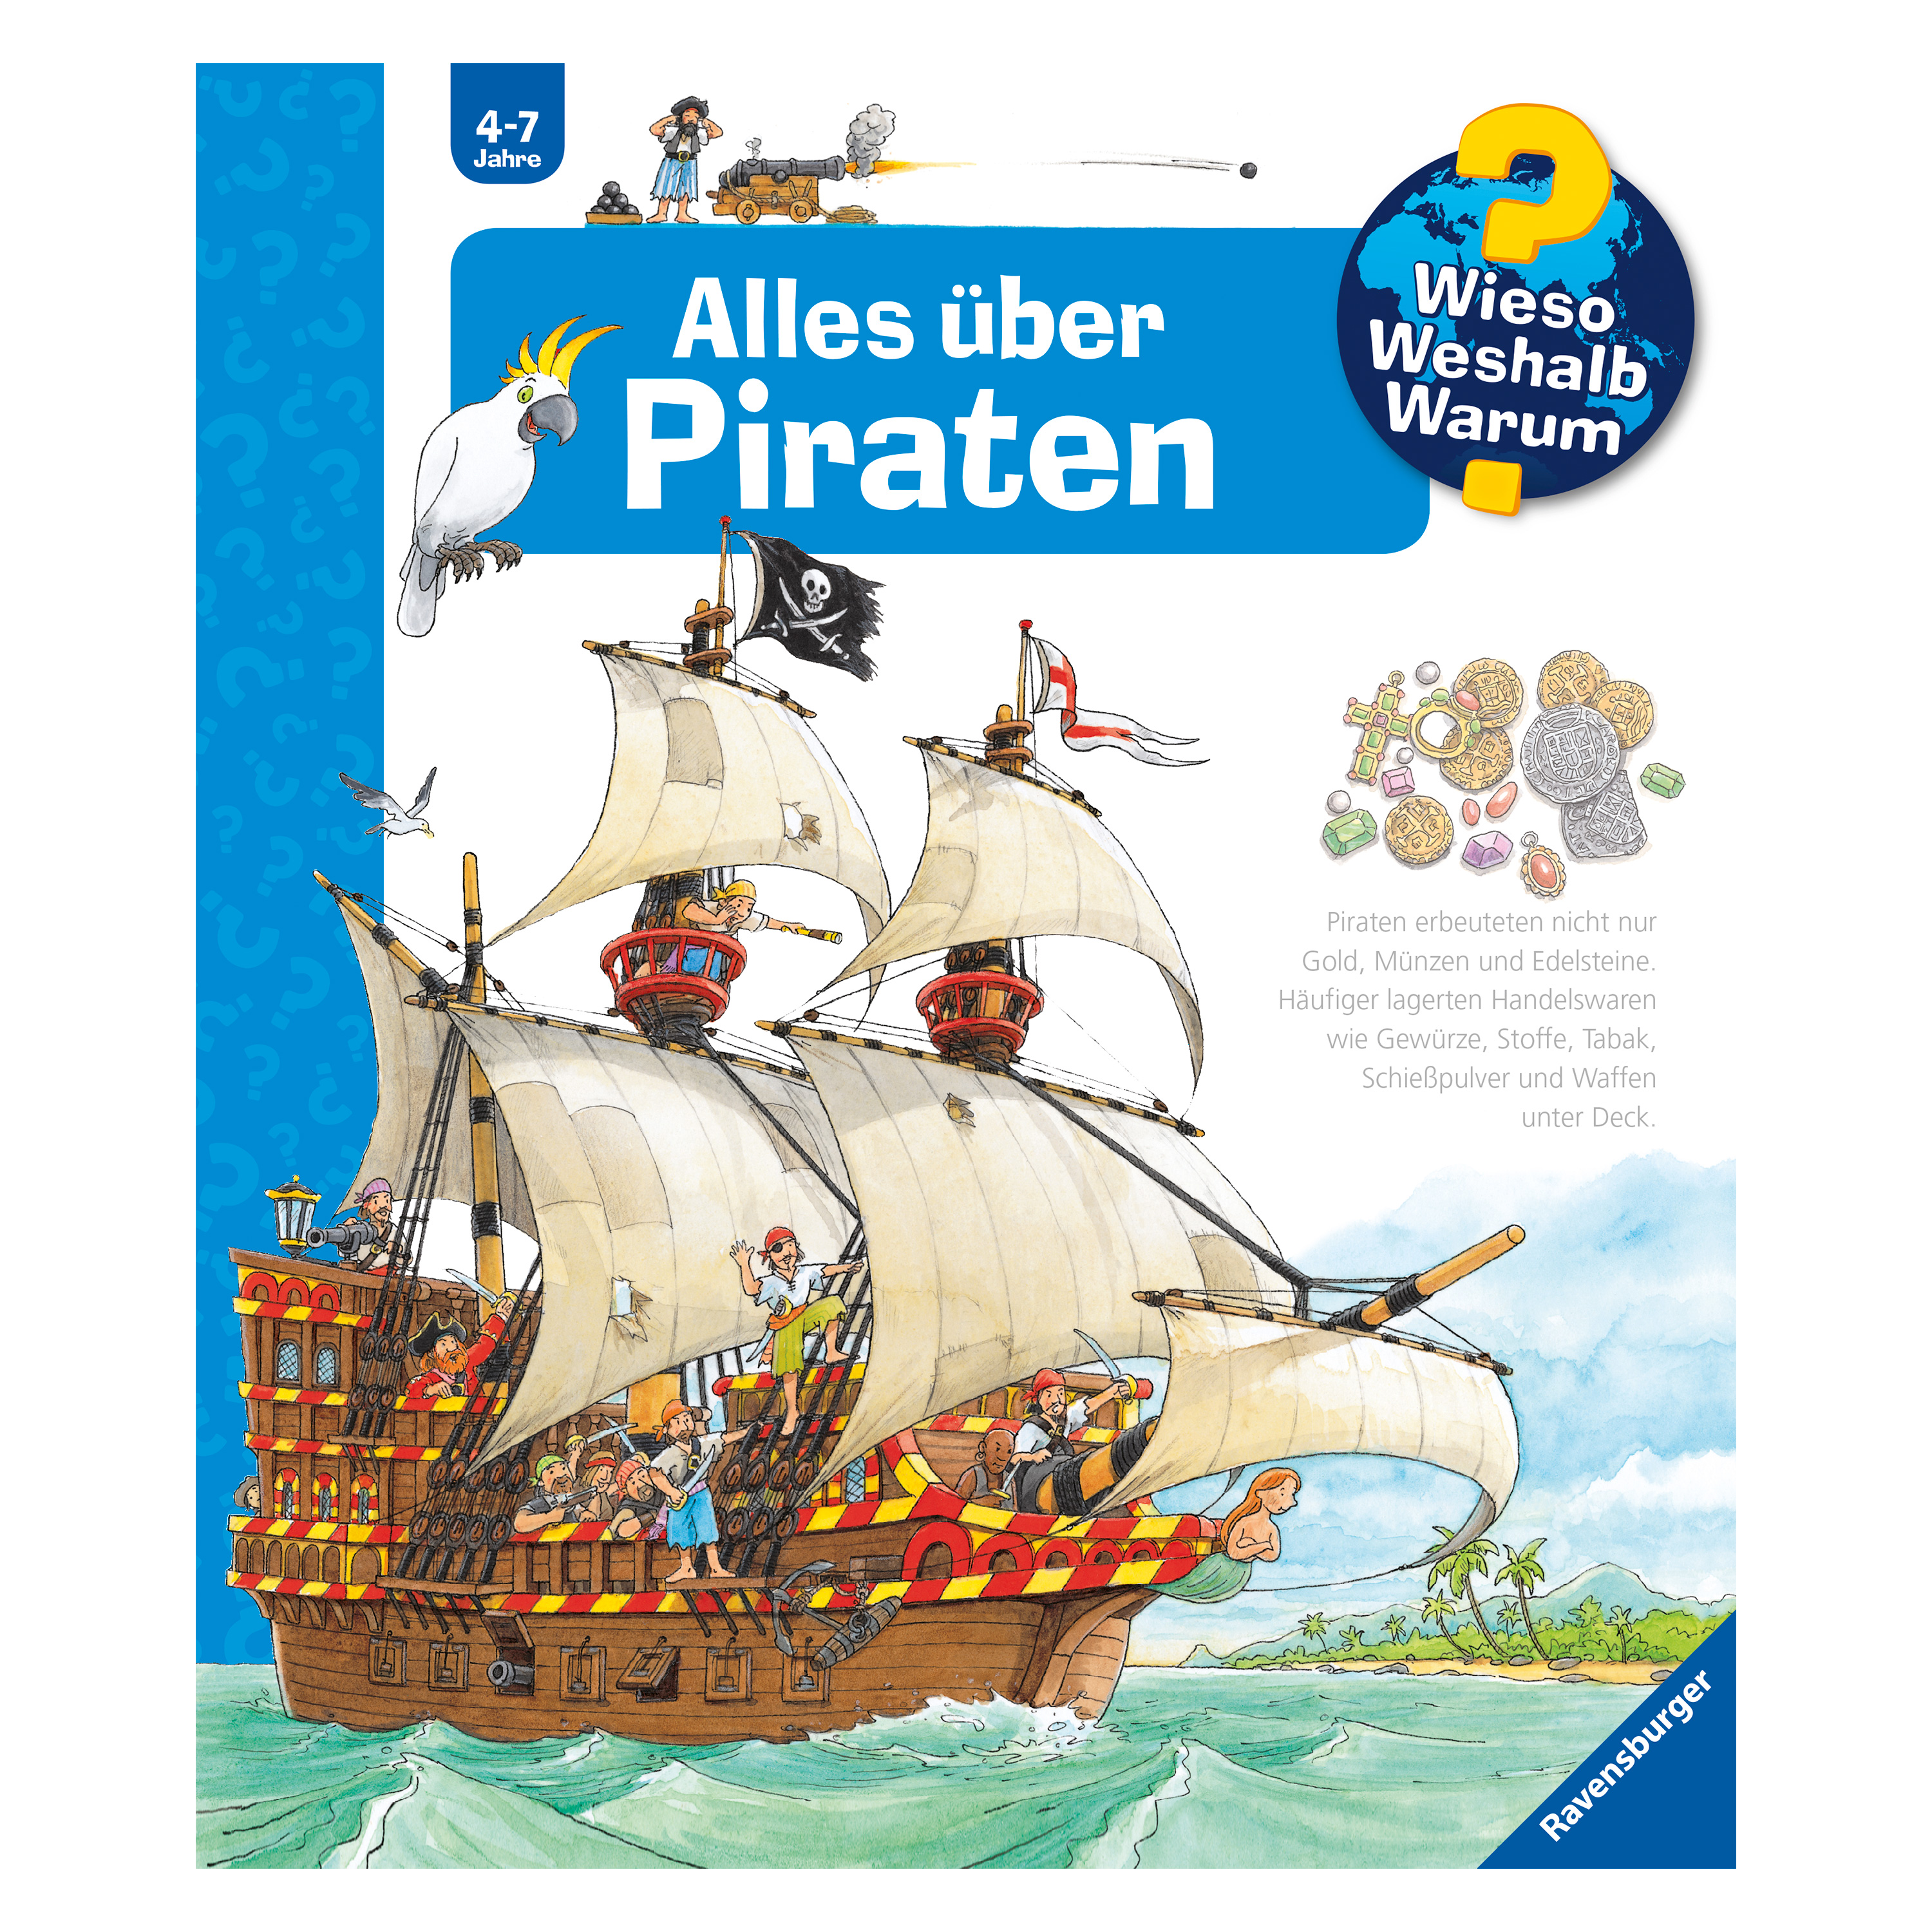 WWW 'Alles über Piraten' (Bd. 40)